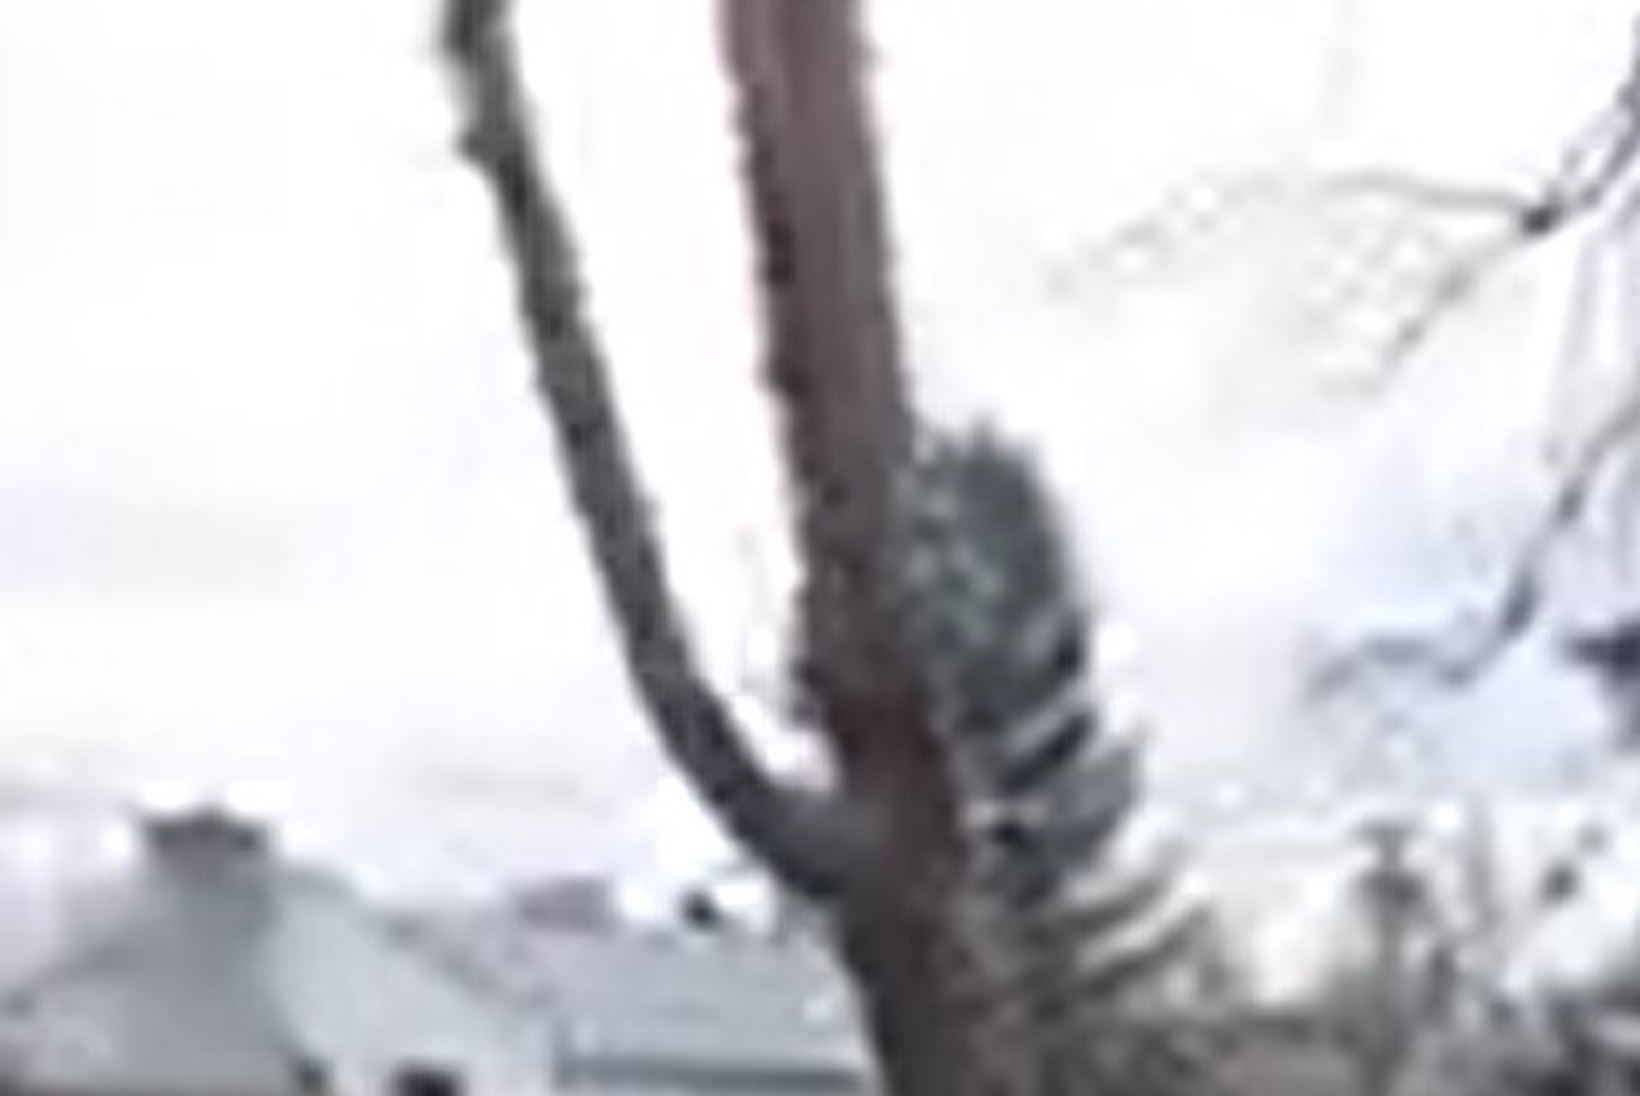 USKUMATU VIDEO: puu, mida mees saagis, liikus tagasi oma kohale